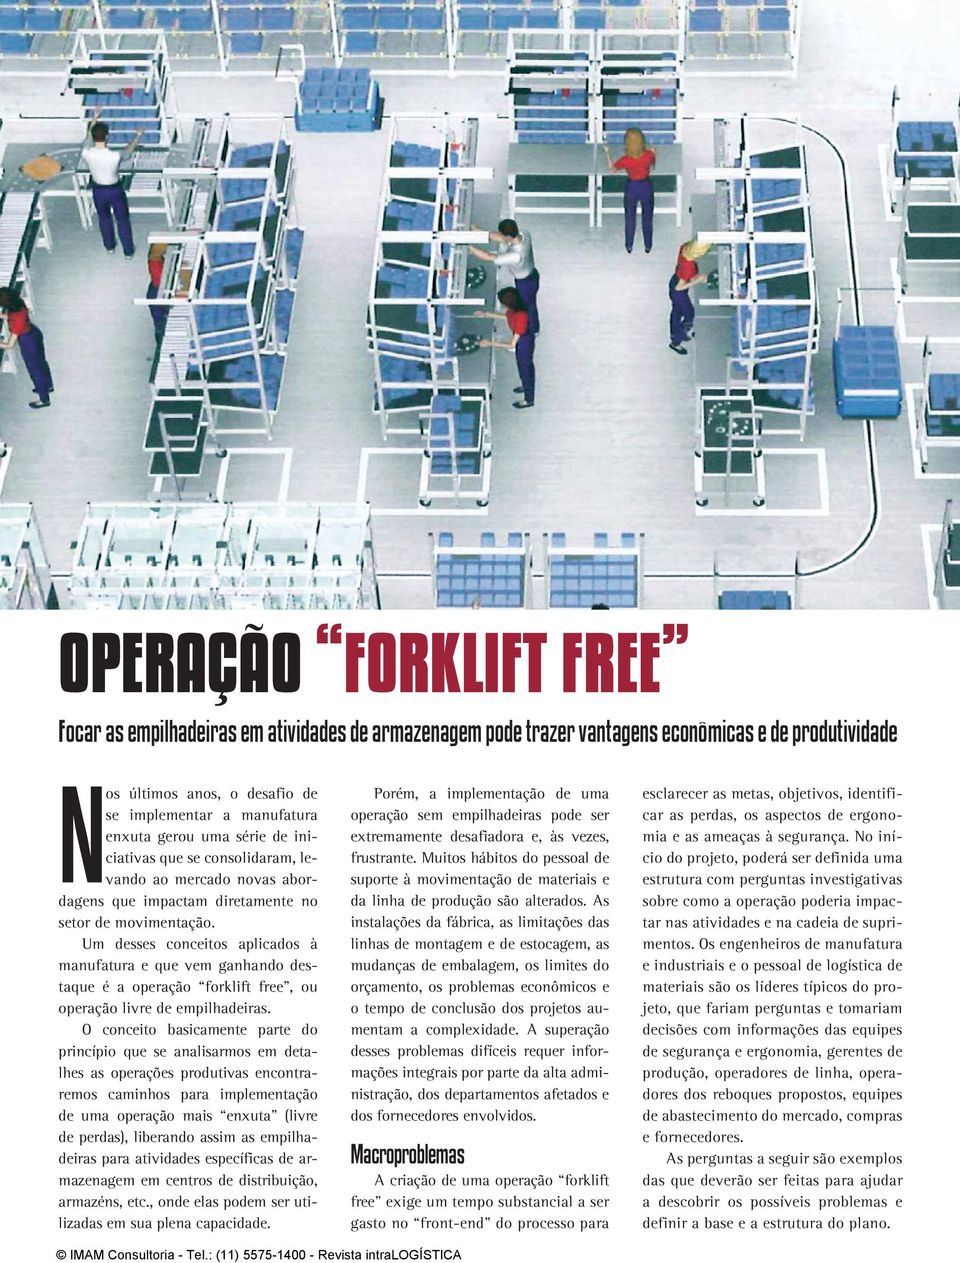 Um desses conceitos aplicados à manufatura e que vem ganhando destaque é a operação forklift free, ou operação livre de empilhadeiras.